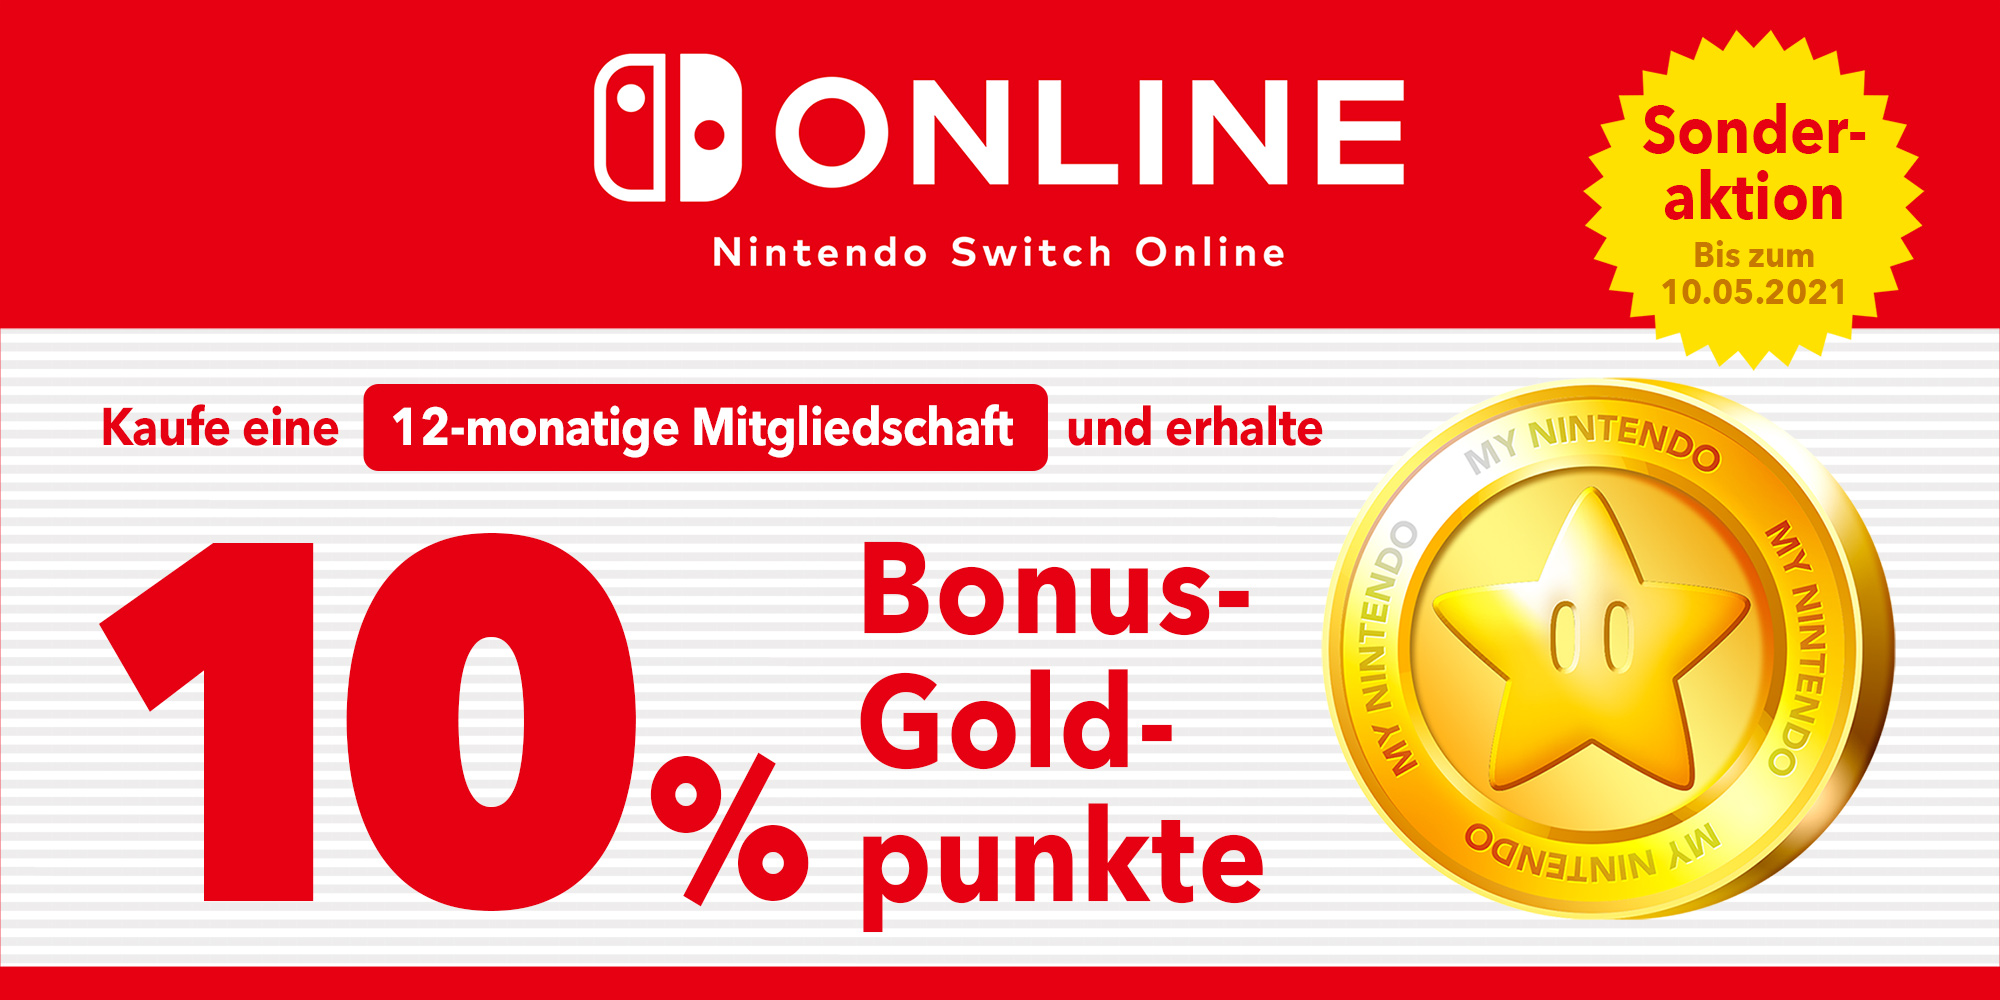 Sonderaktion: Verdiene bis zu CHF 4.90 in Goldpunkten mit einer 12-monatigen Mitgliedschaft bei Nintendo Switch Online!